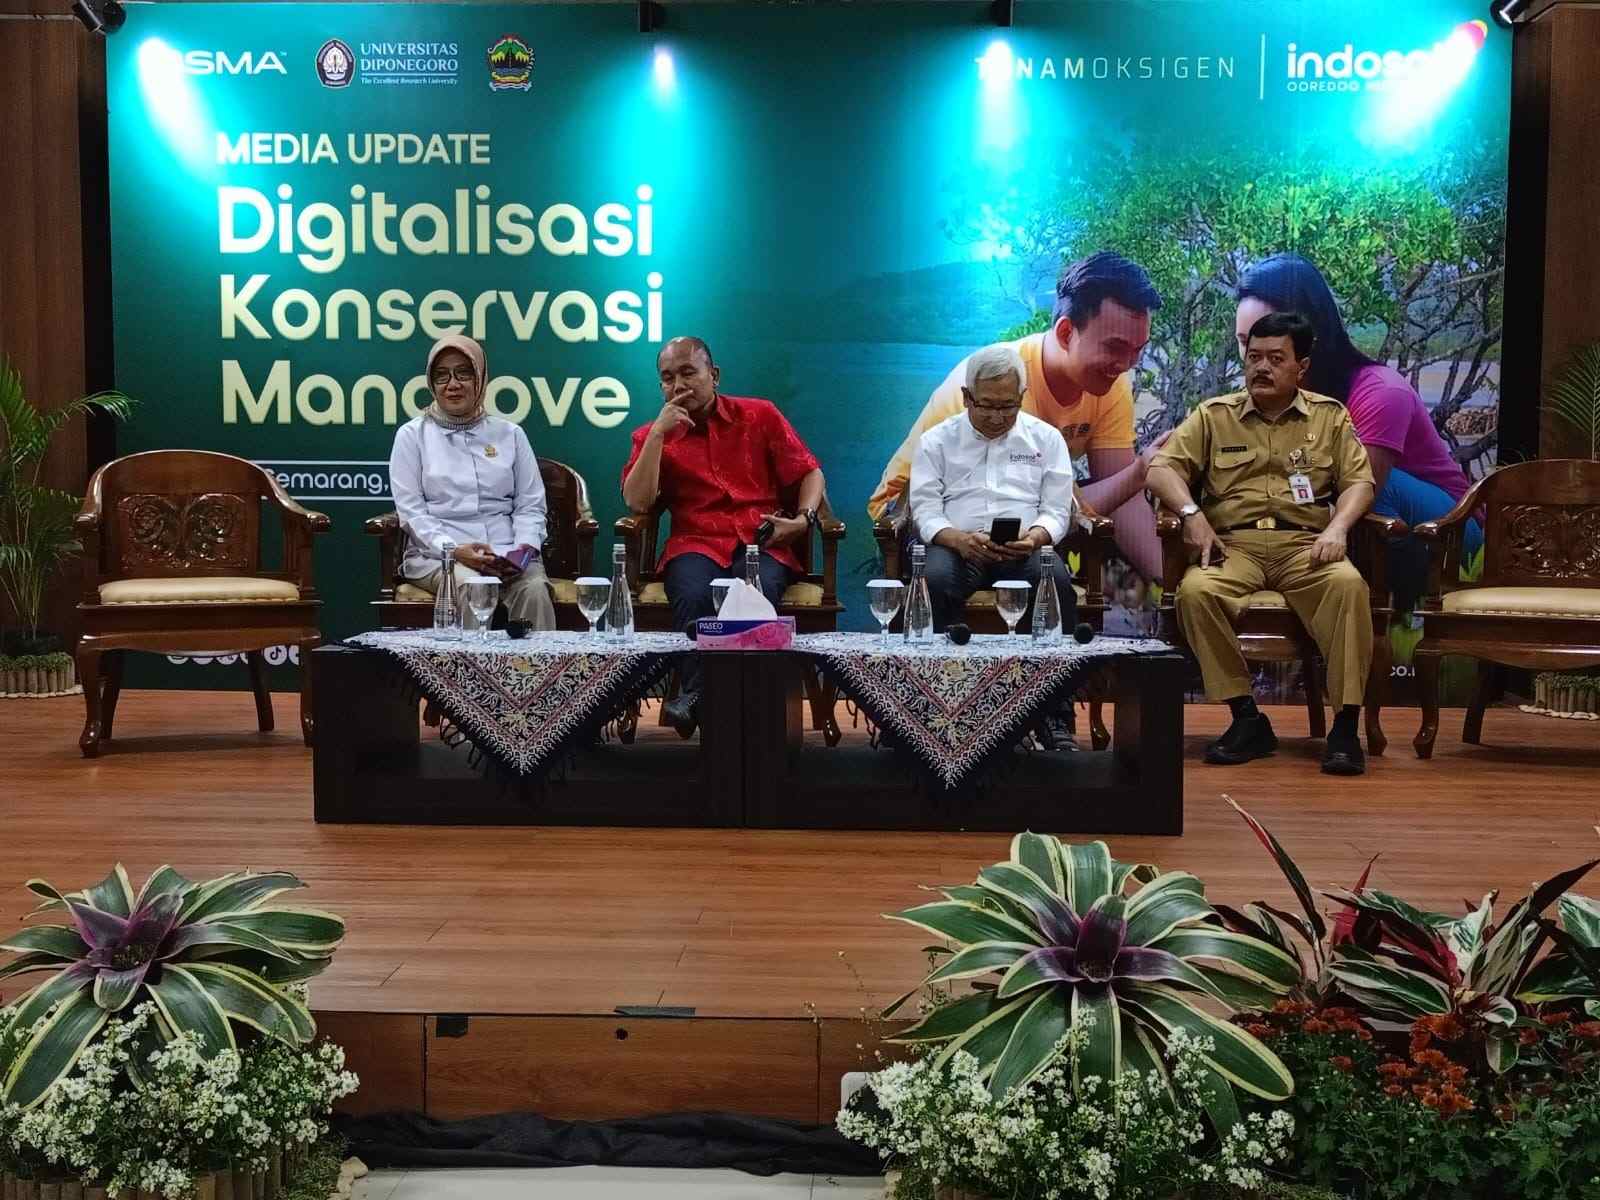 Indosat Gandeng UNDIP Wujudkan Digitalisasi Konservasi Mangrove Menggunakan IoT